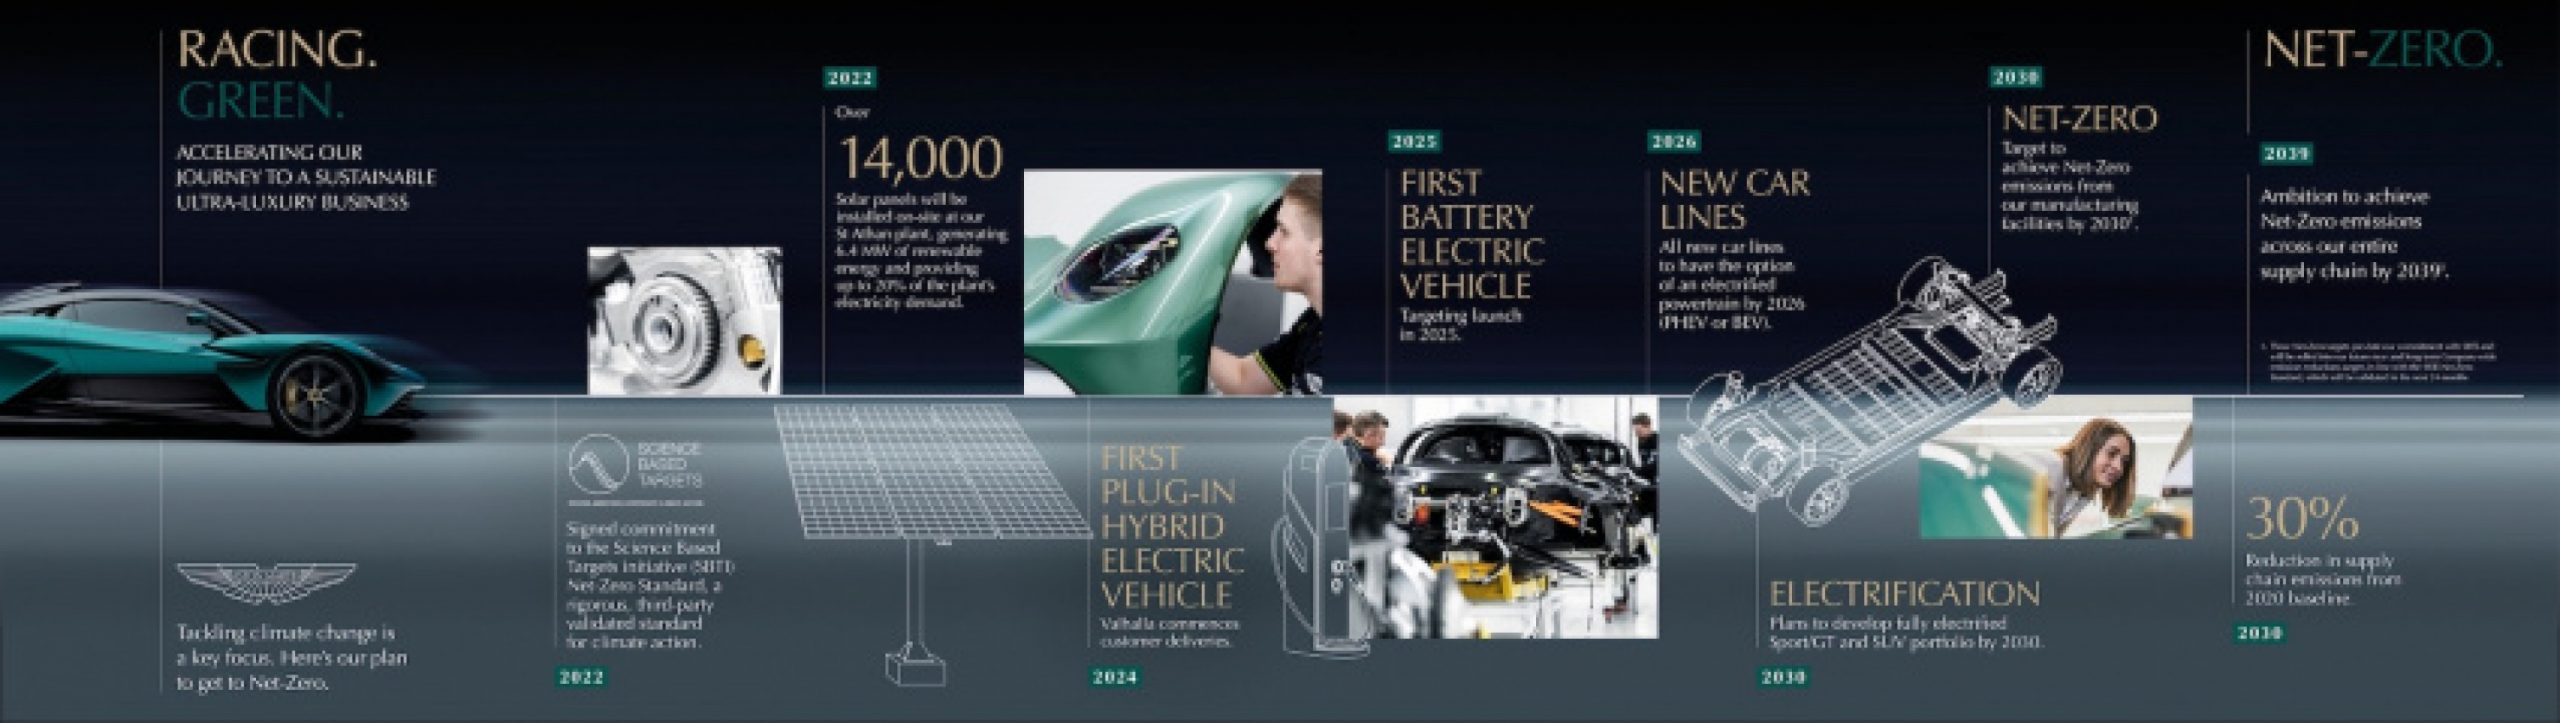 aston martin, autos, cars, aston martin confirms ev in 2025, fully electrified lineup by 2030